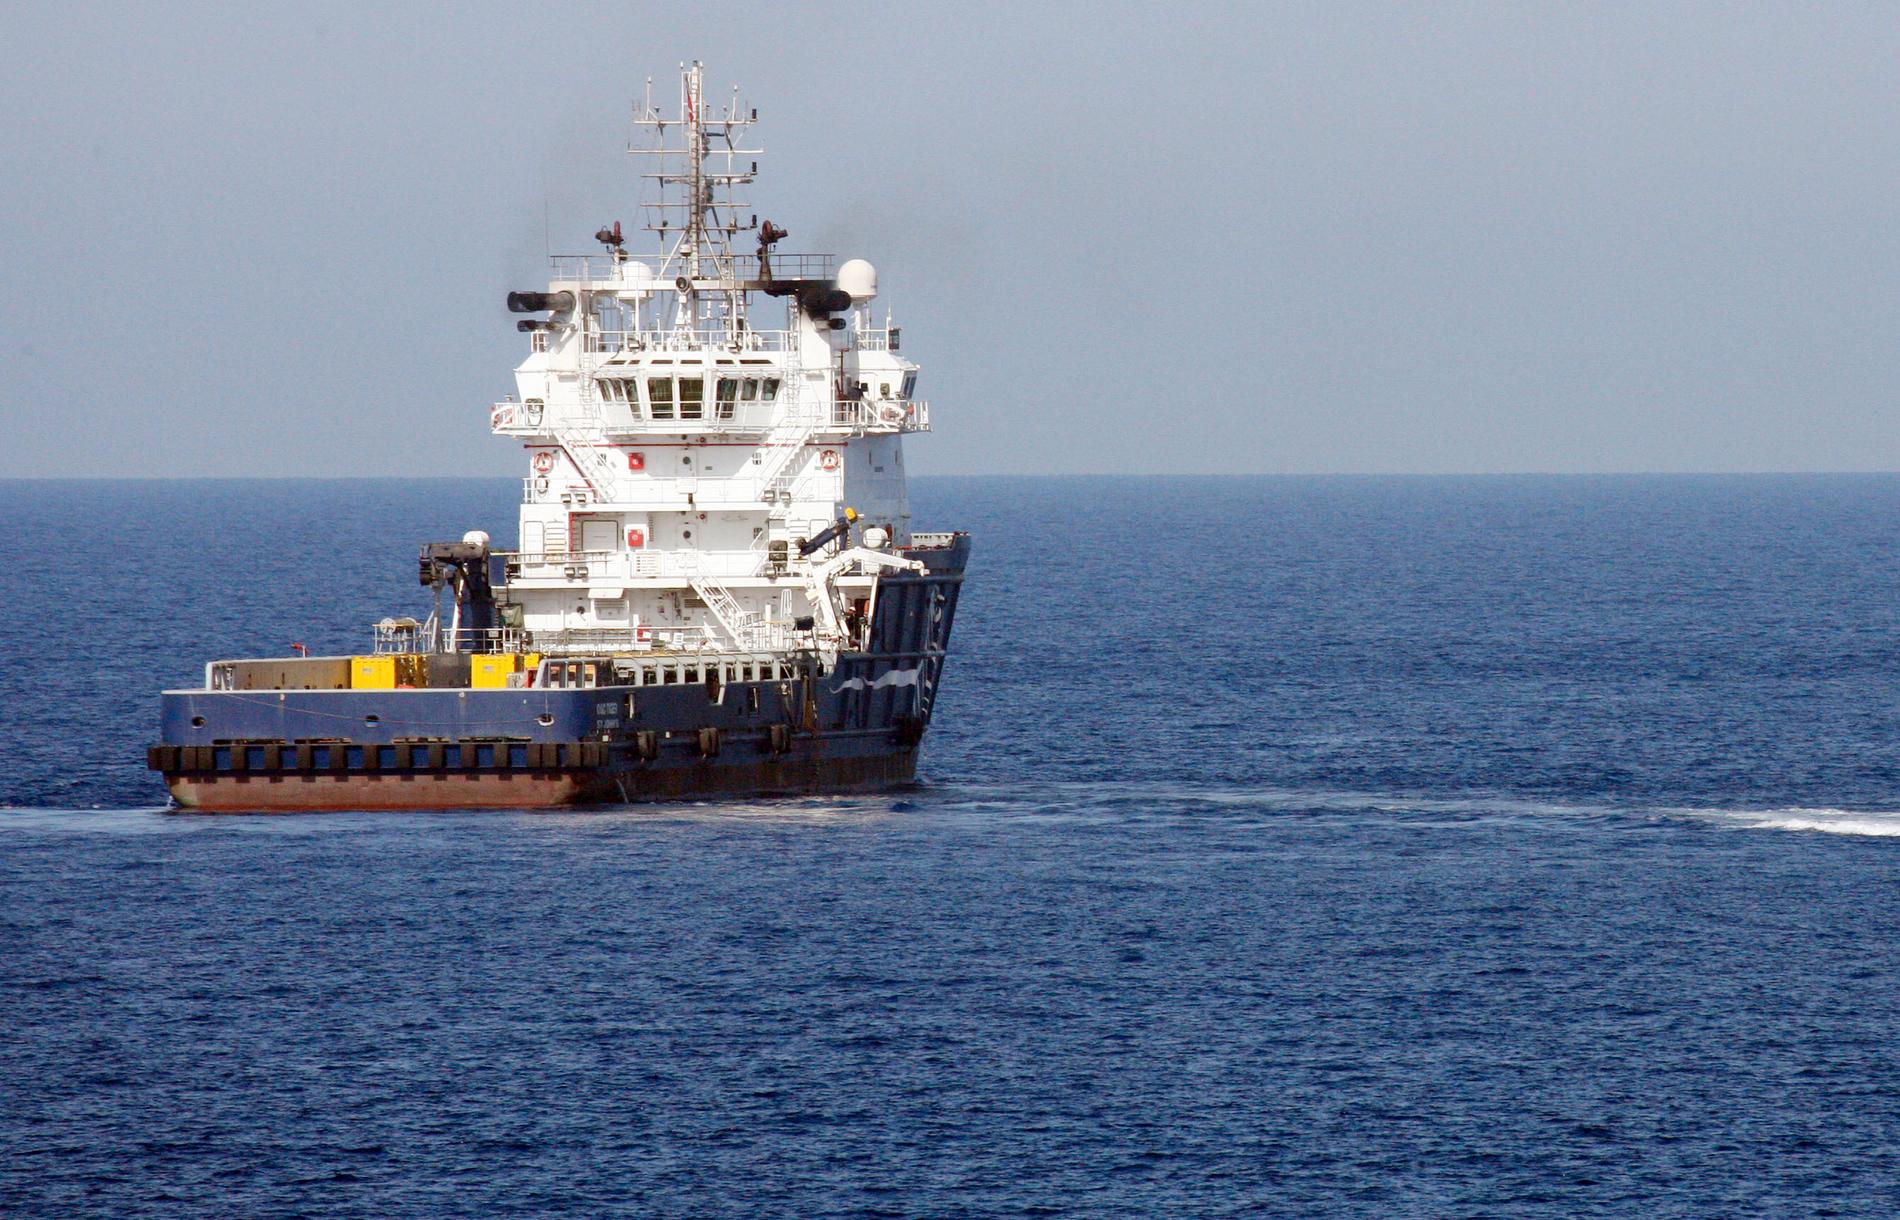 Kustbevakningens fartyg KBV 001 Poseidon var ett av fartygen som bogserade bulkfartyget i säkerhet. Arkivbild.